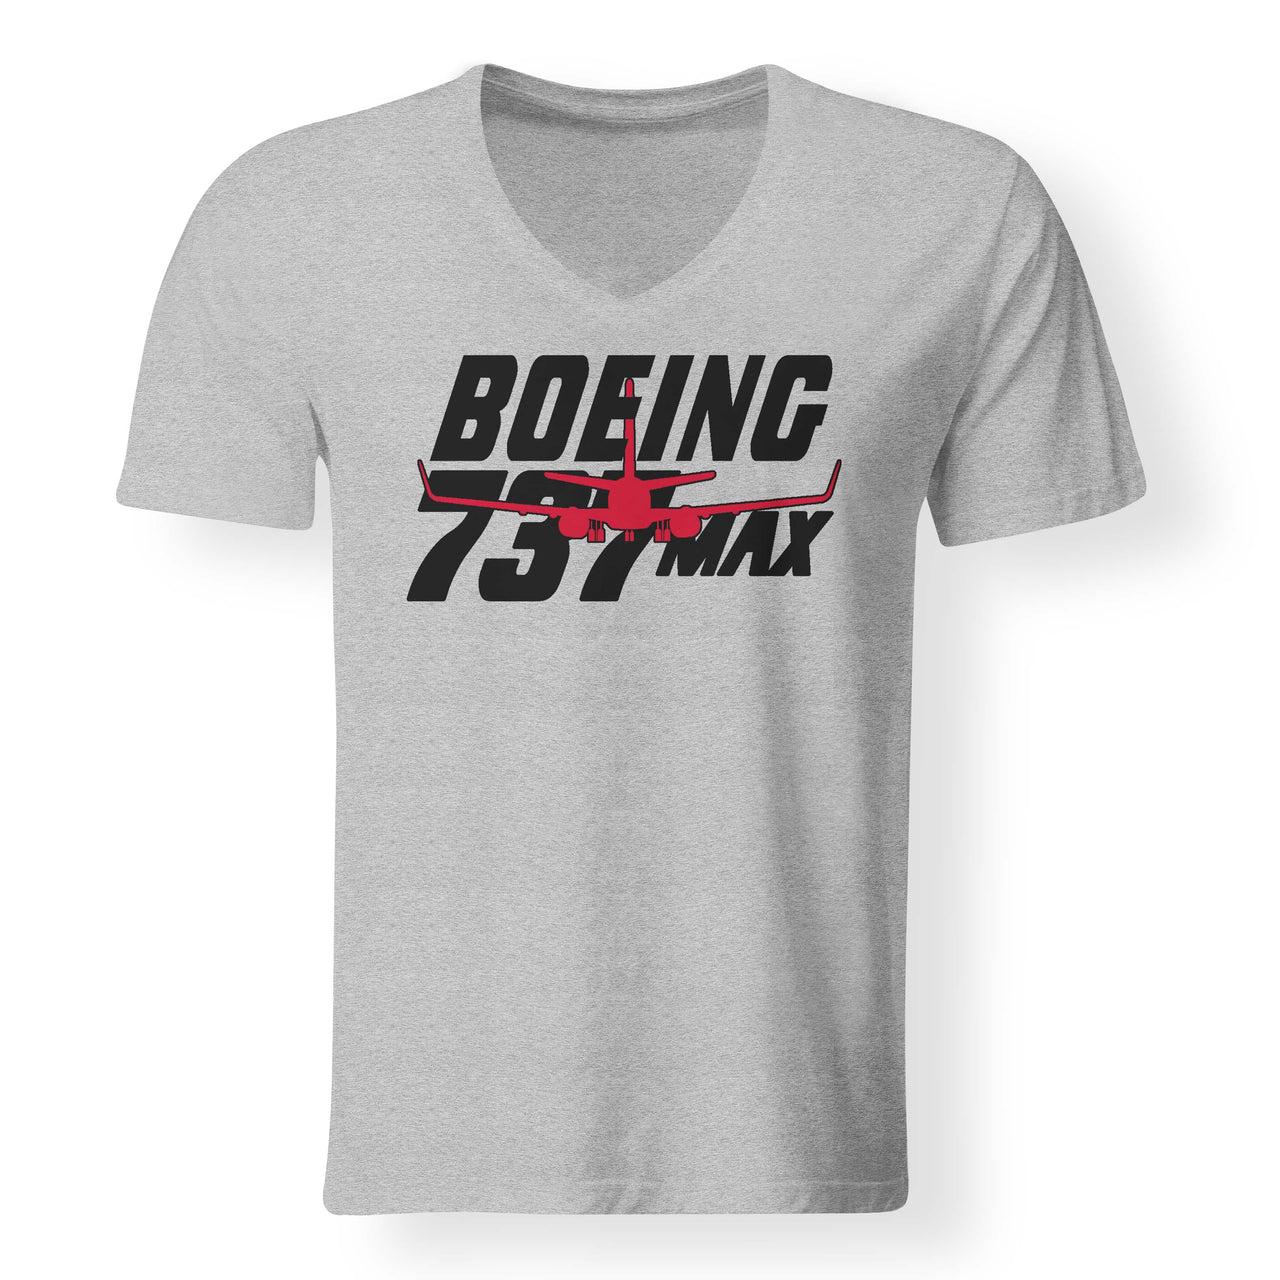 Amazing 737 Max Designed V-Neck T-Shirts